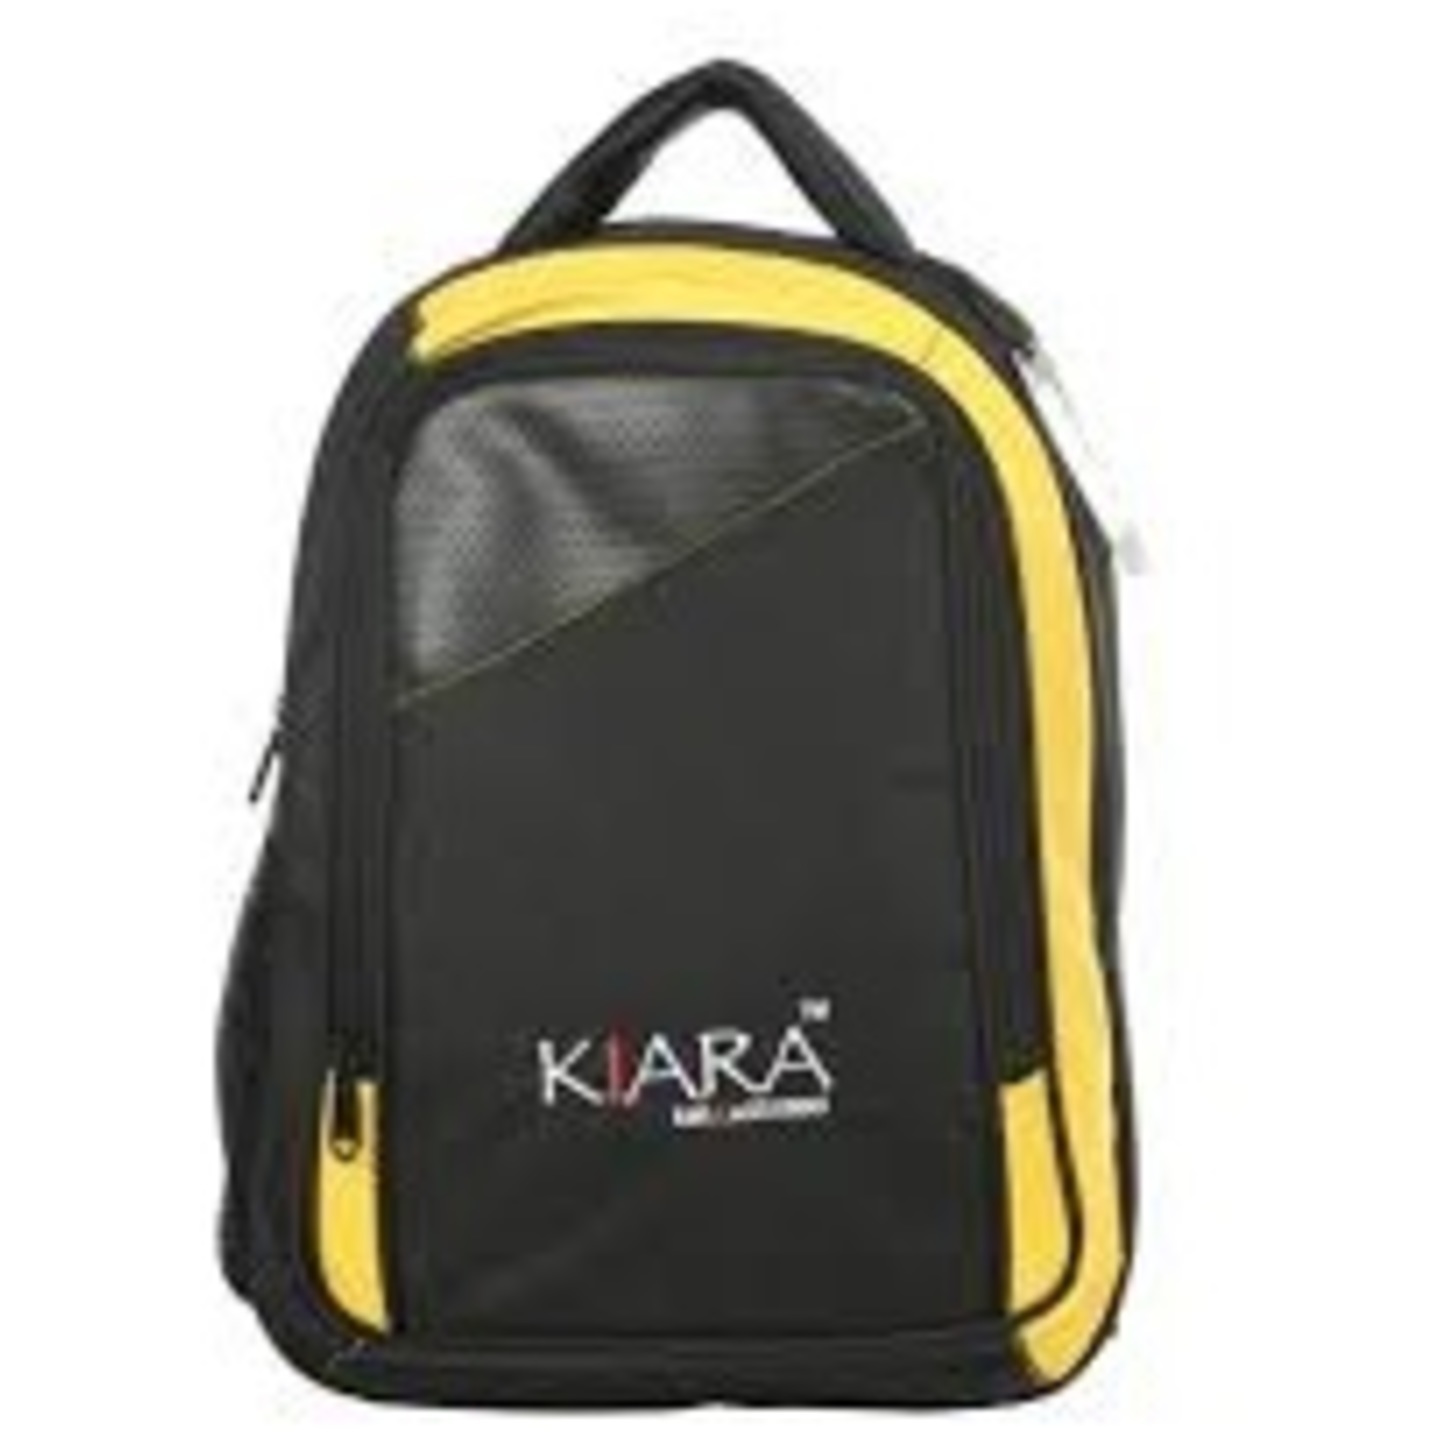 Kiara 18 inch backpack